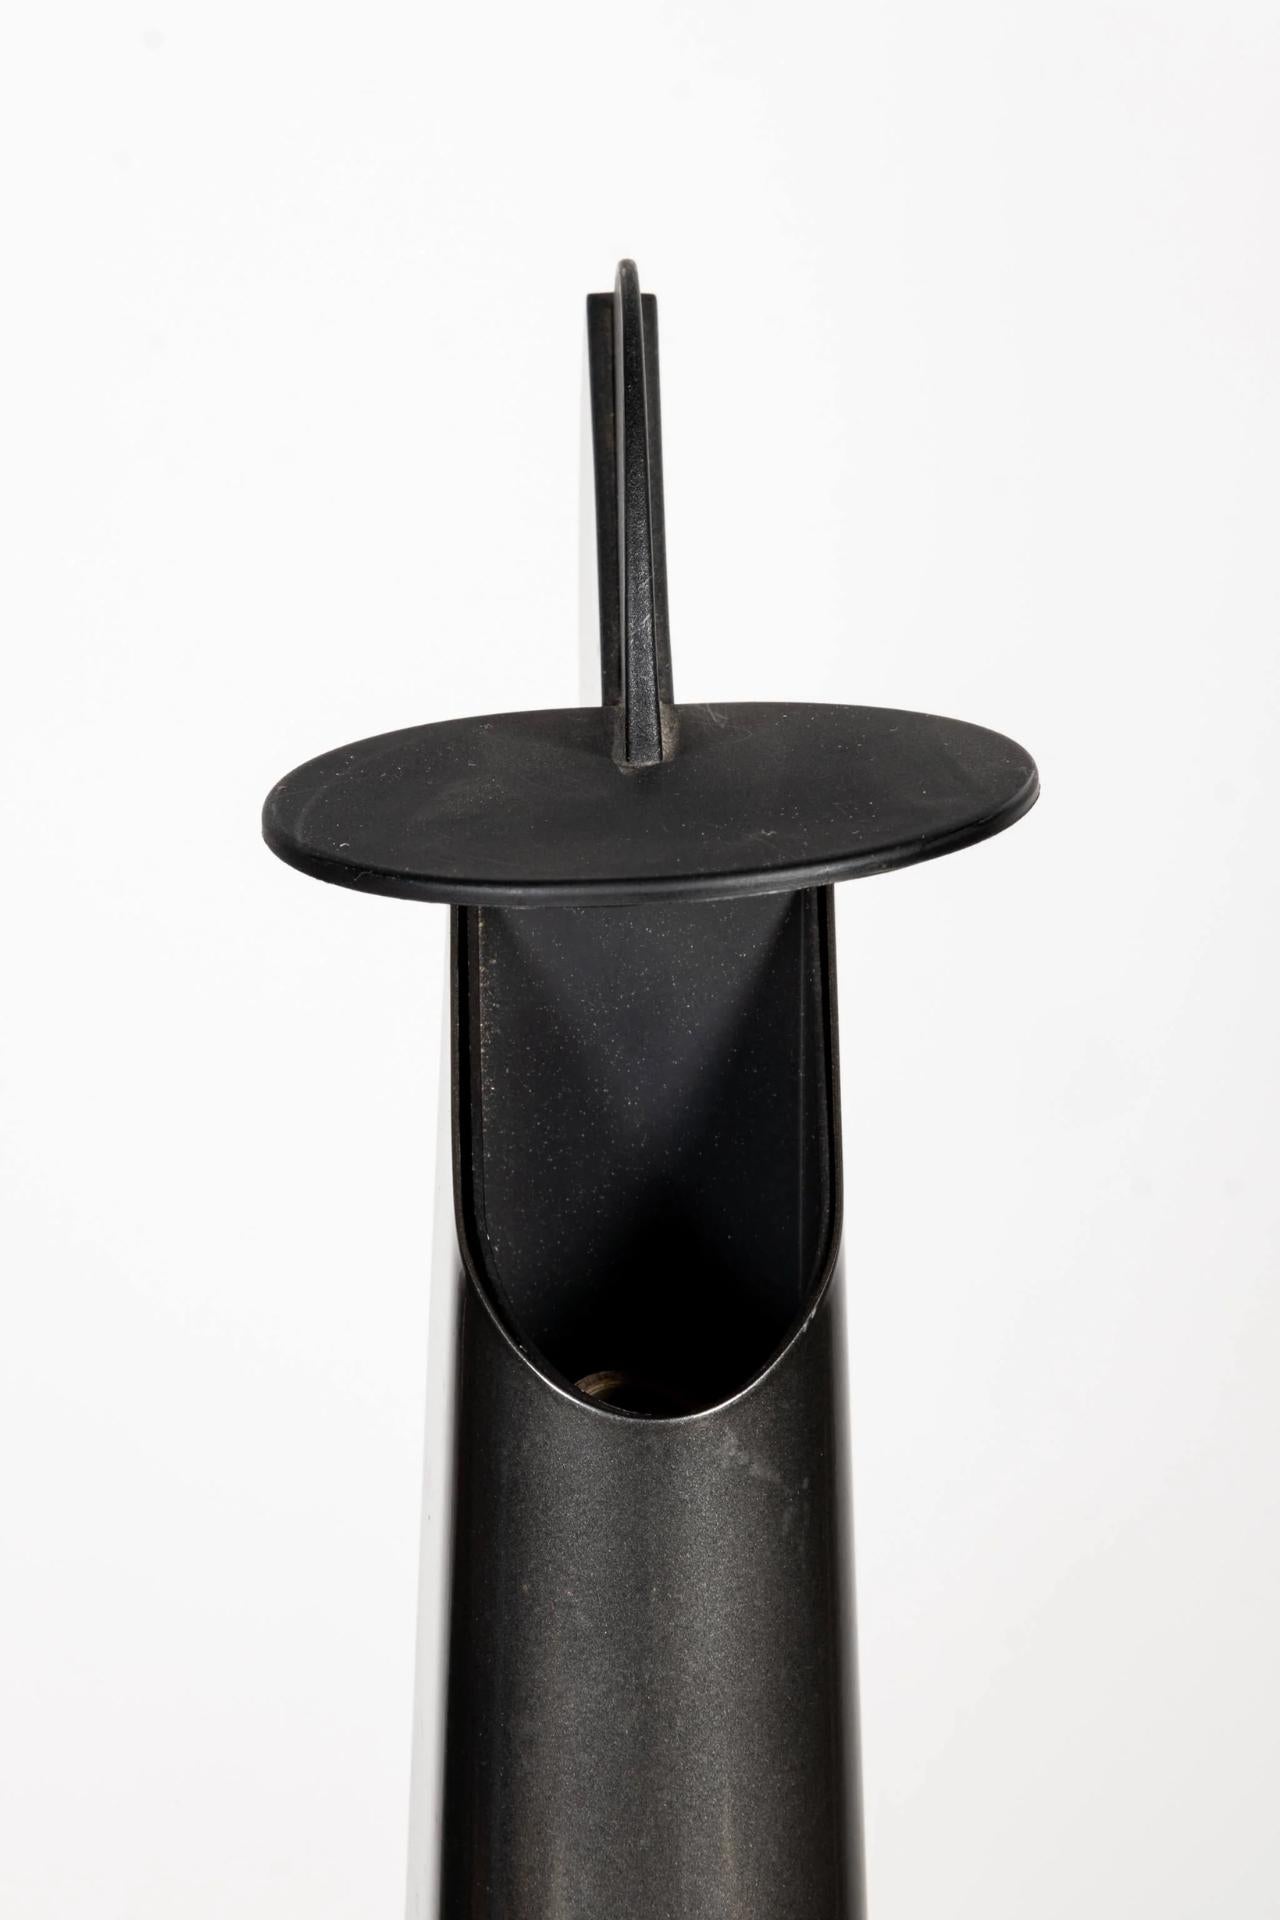 1980s Flos Gibigiana Desk Lamp, Black by Achille Castiglioni For Sale 2